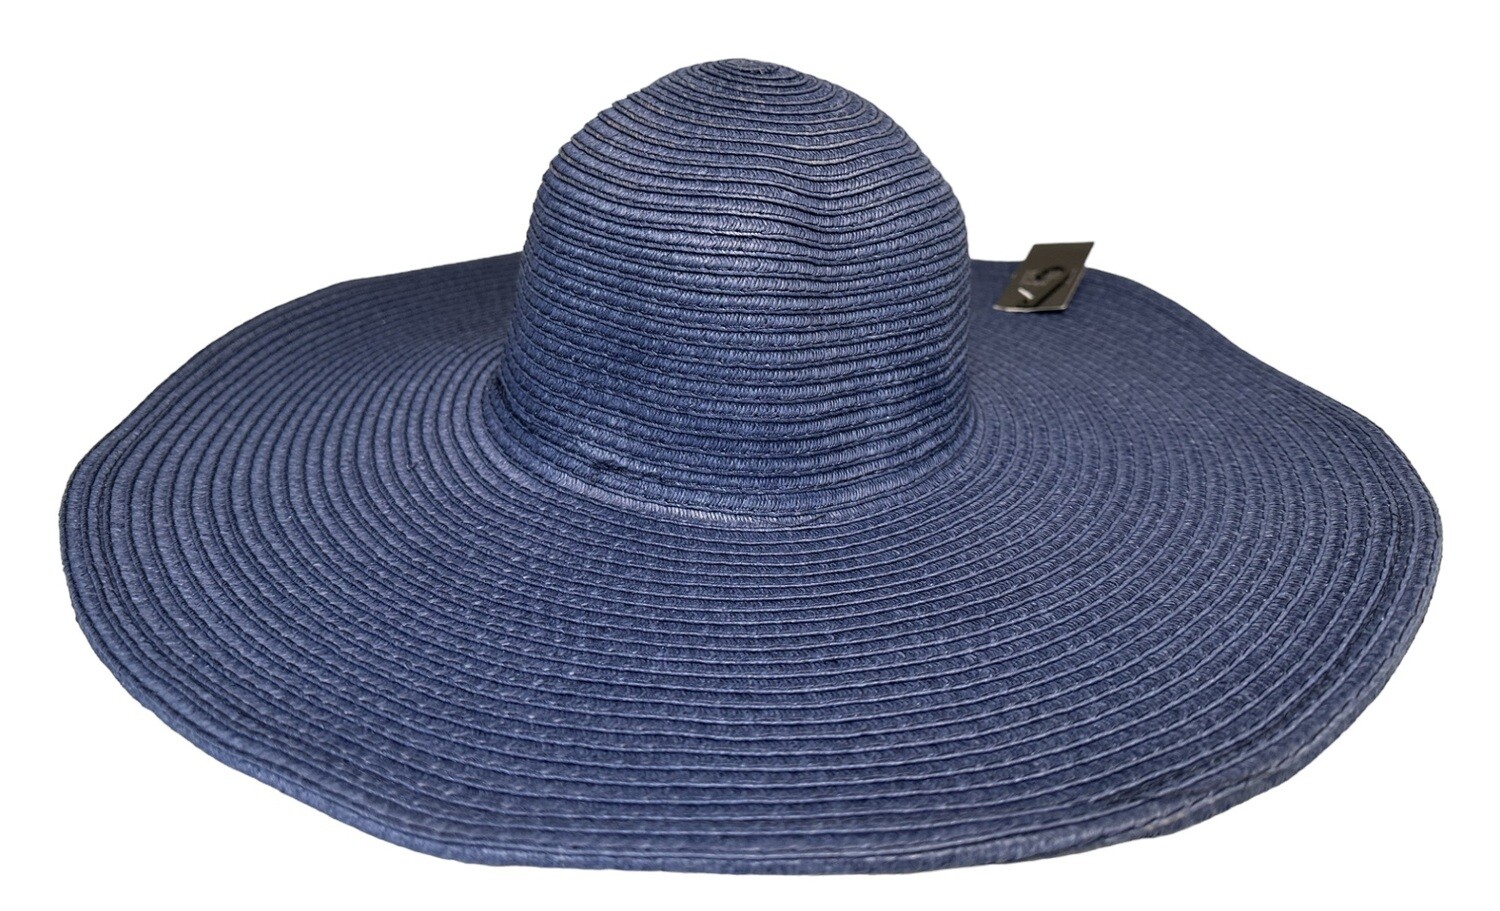 Premium Summer Sun Straw Hat Wide Brim